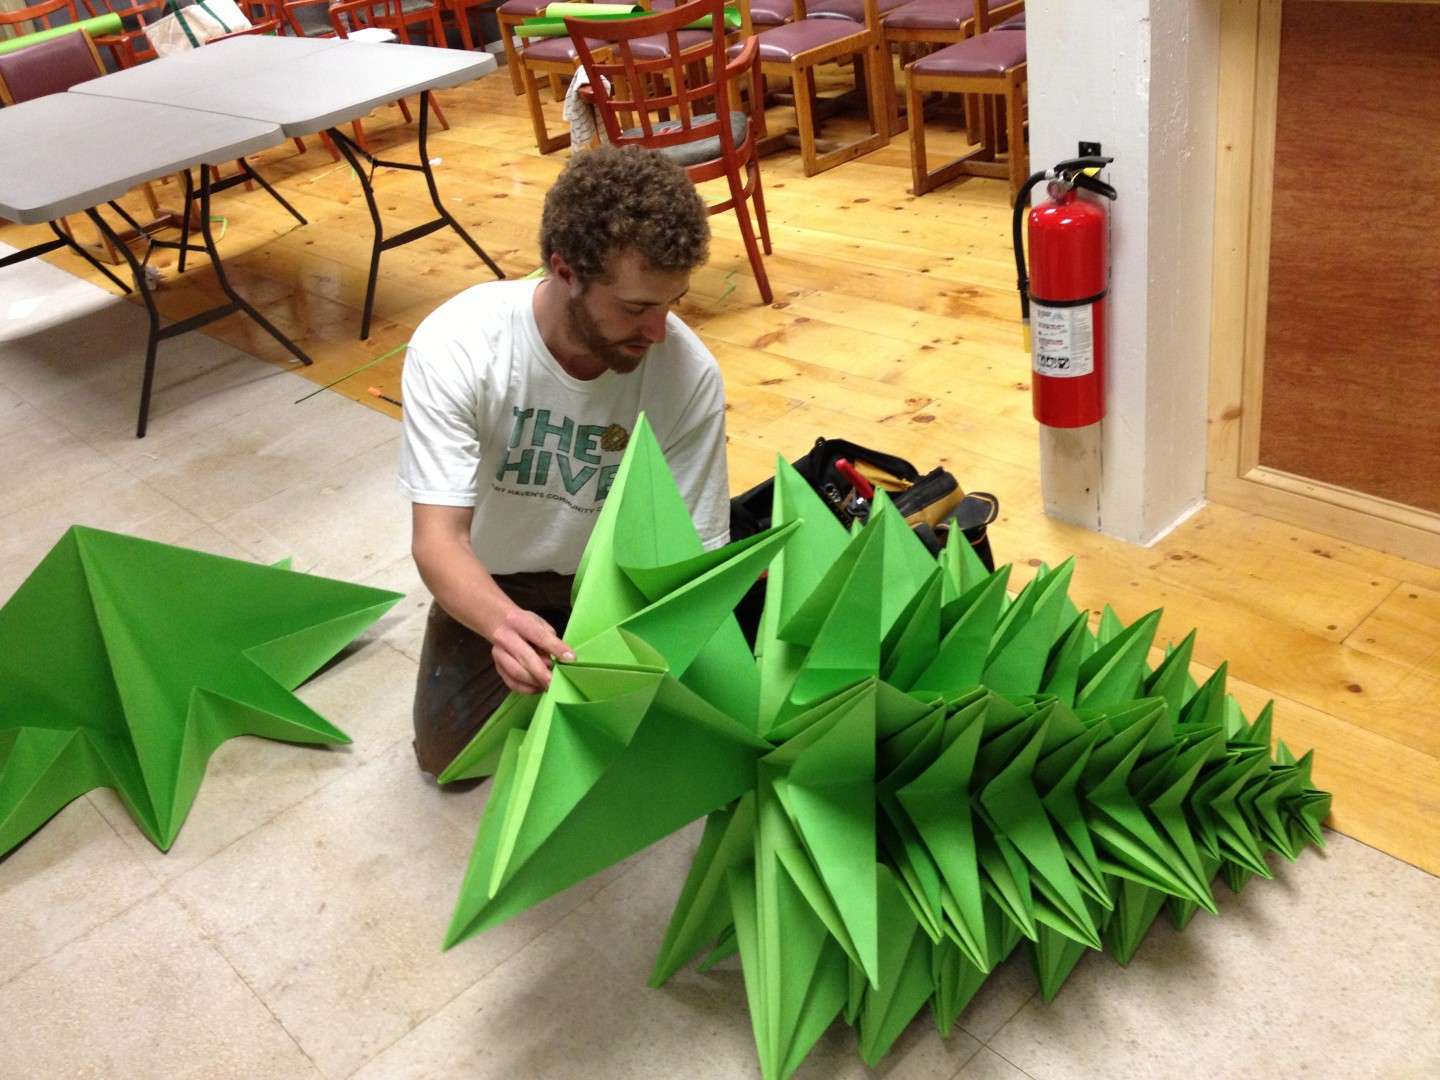 Gigantesco albero di origami